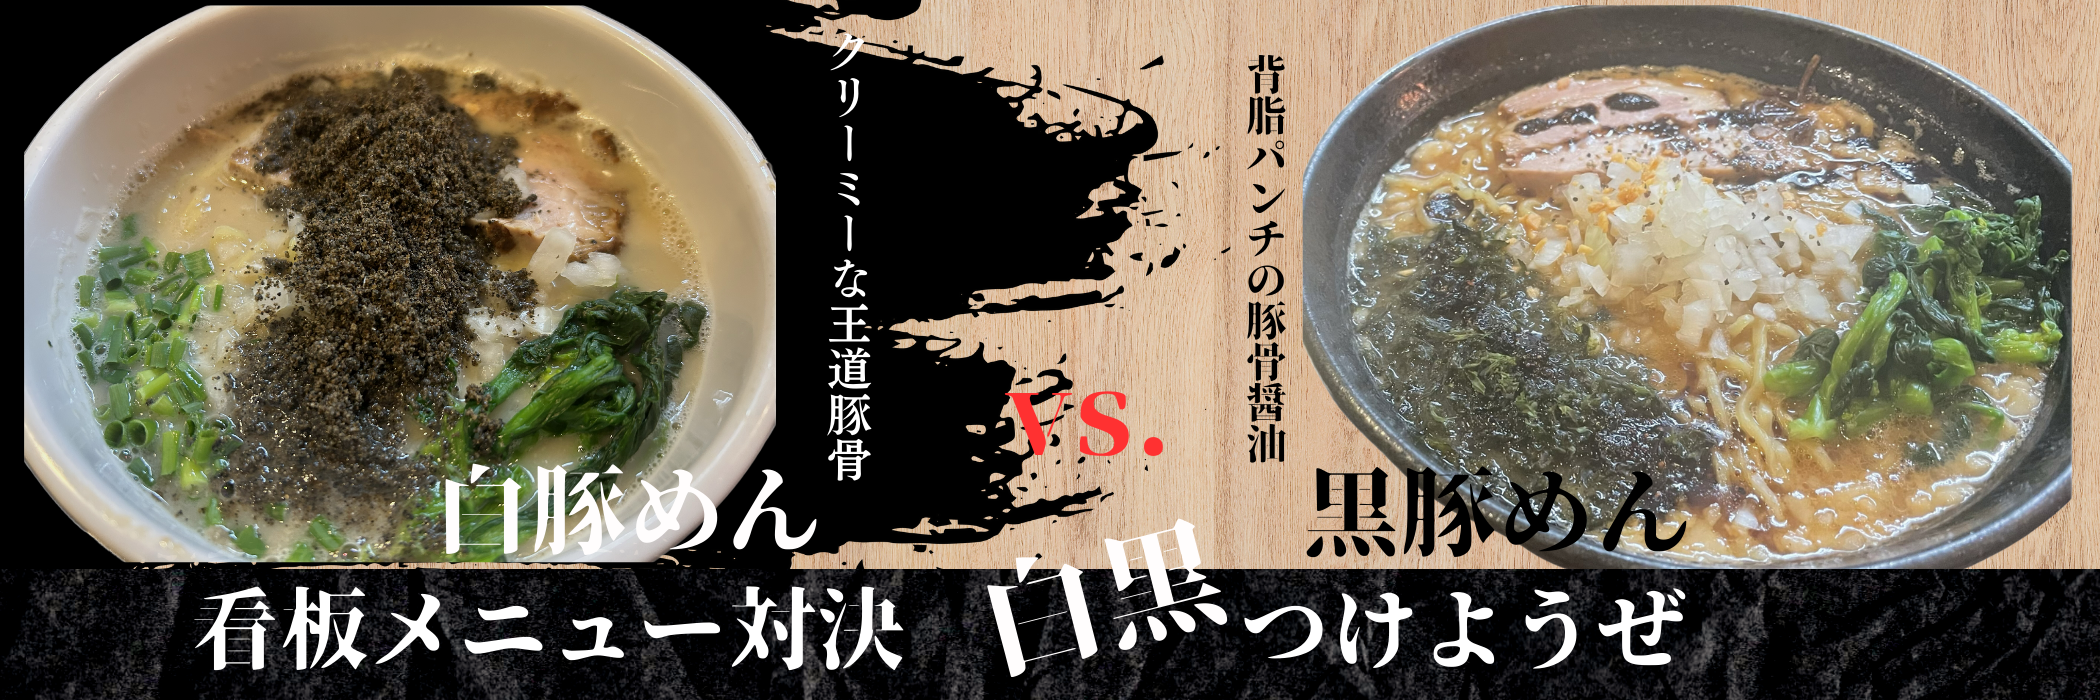 白豚麺,黒豚麺